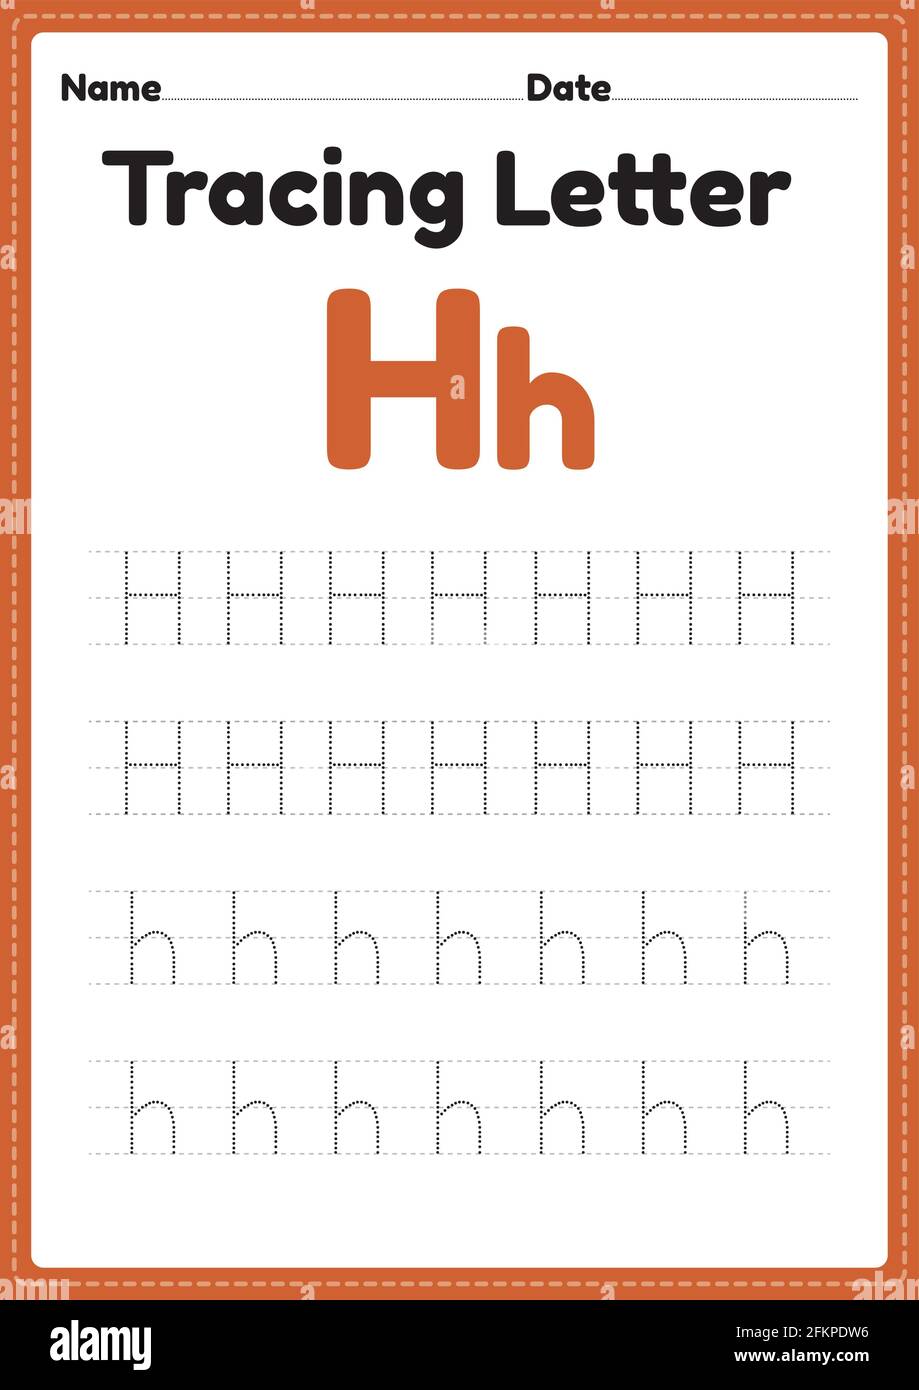 Tracing letter h hi